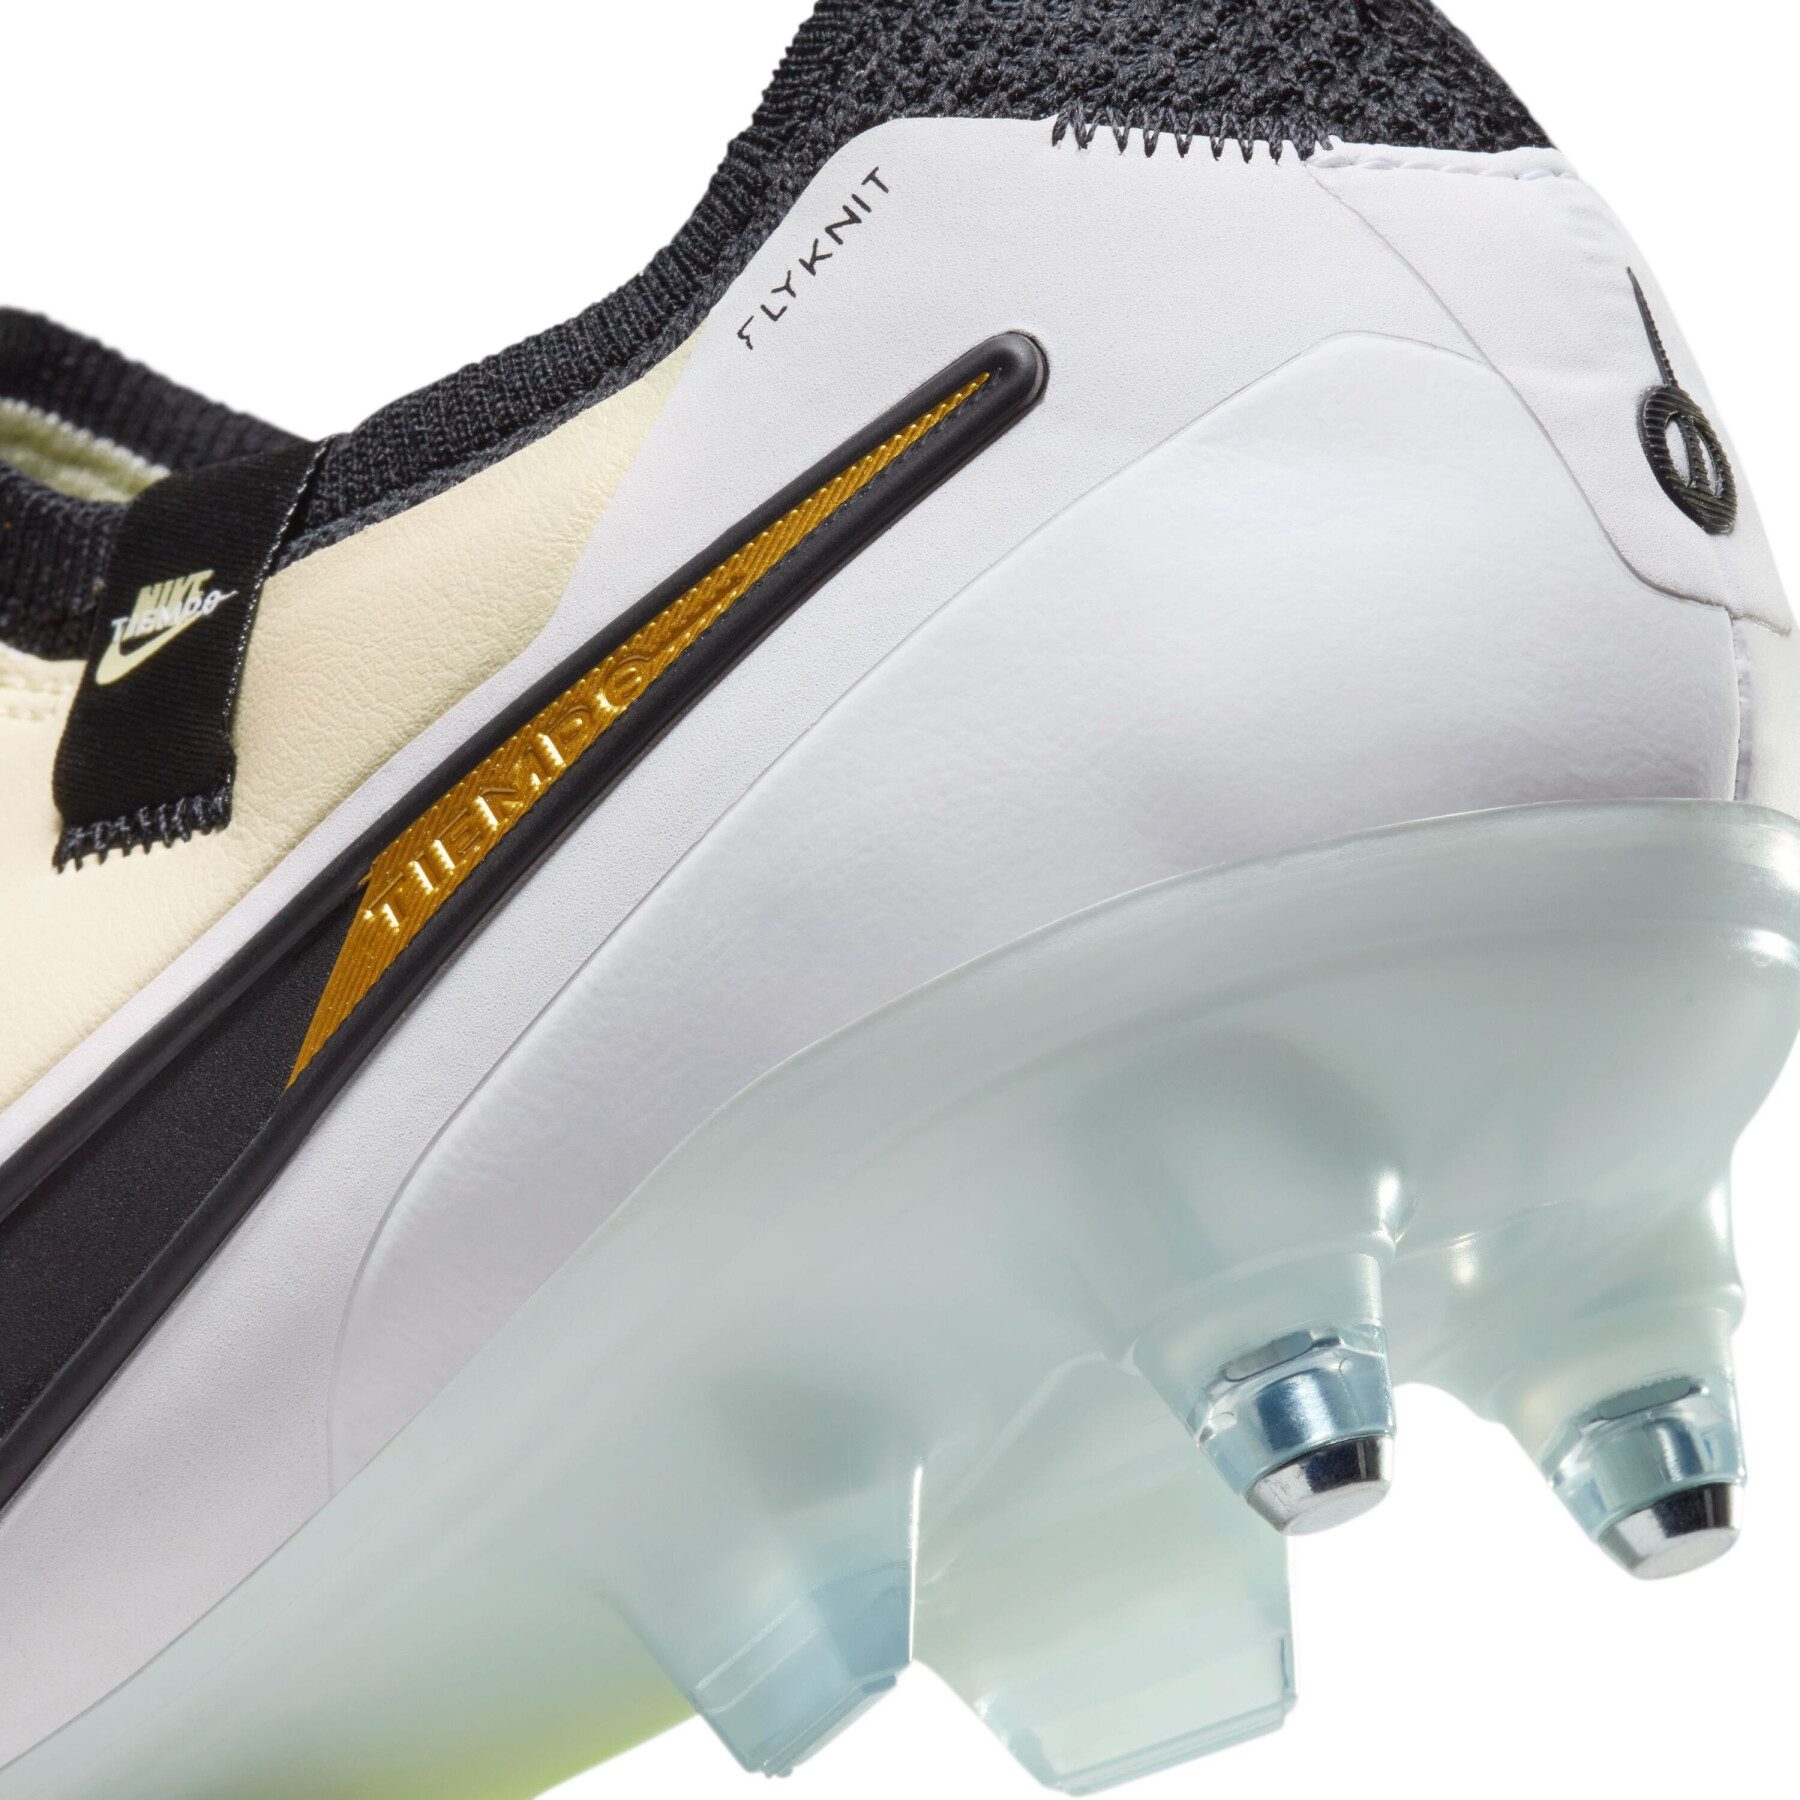 Soccer shoes Nike Tiempo Legend 10 Elite SG-Pro